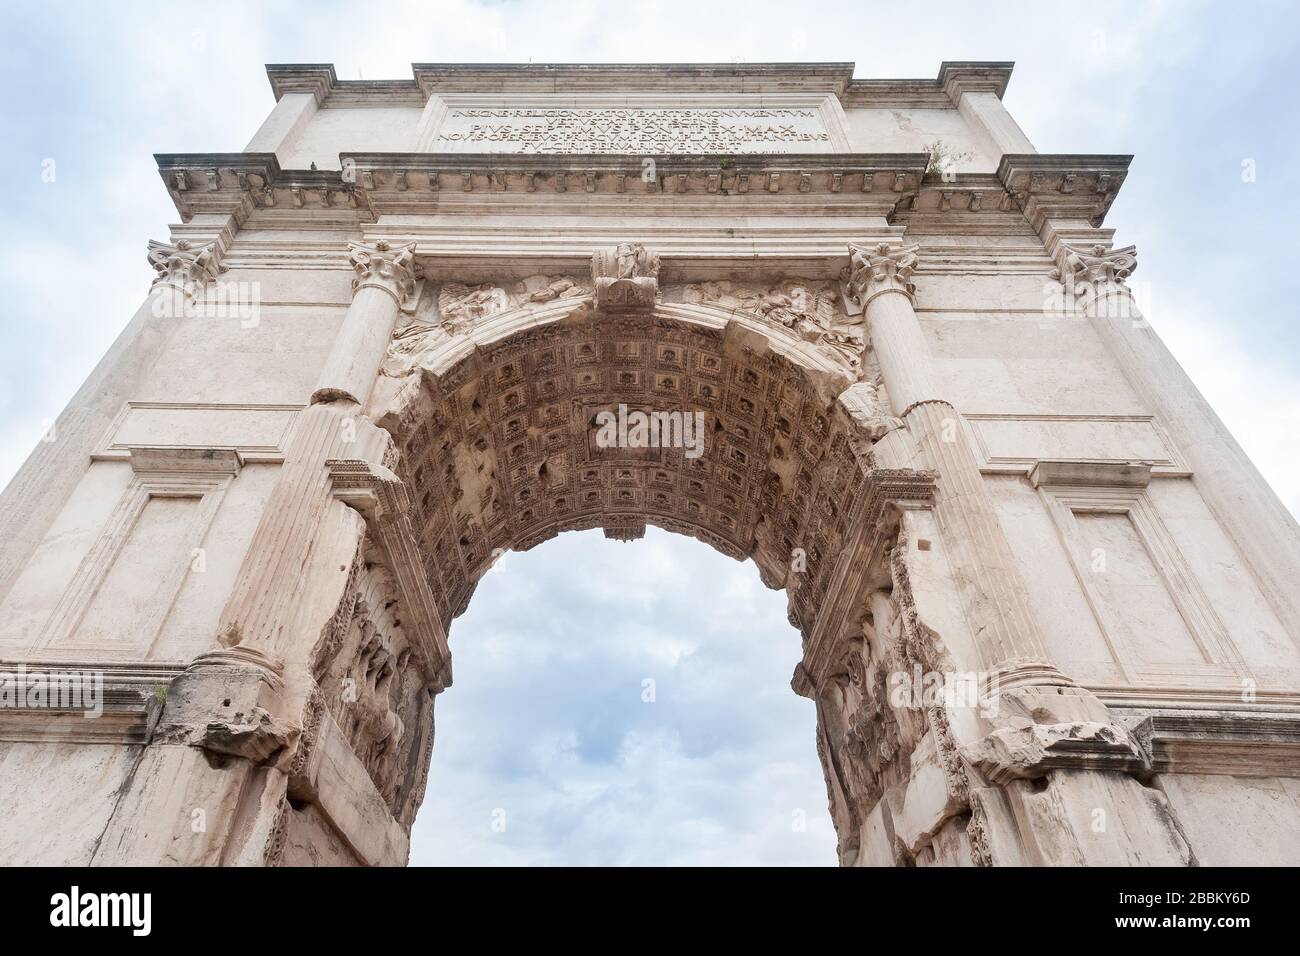 Arch of Titus on the Via Sacra, Rome, Italy Stock Photo